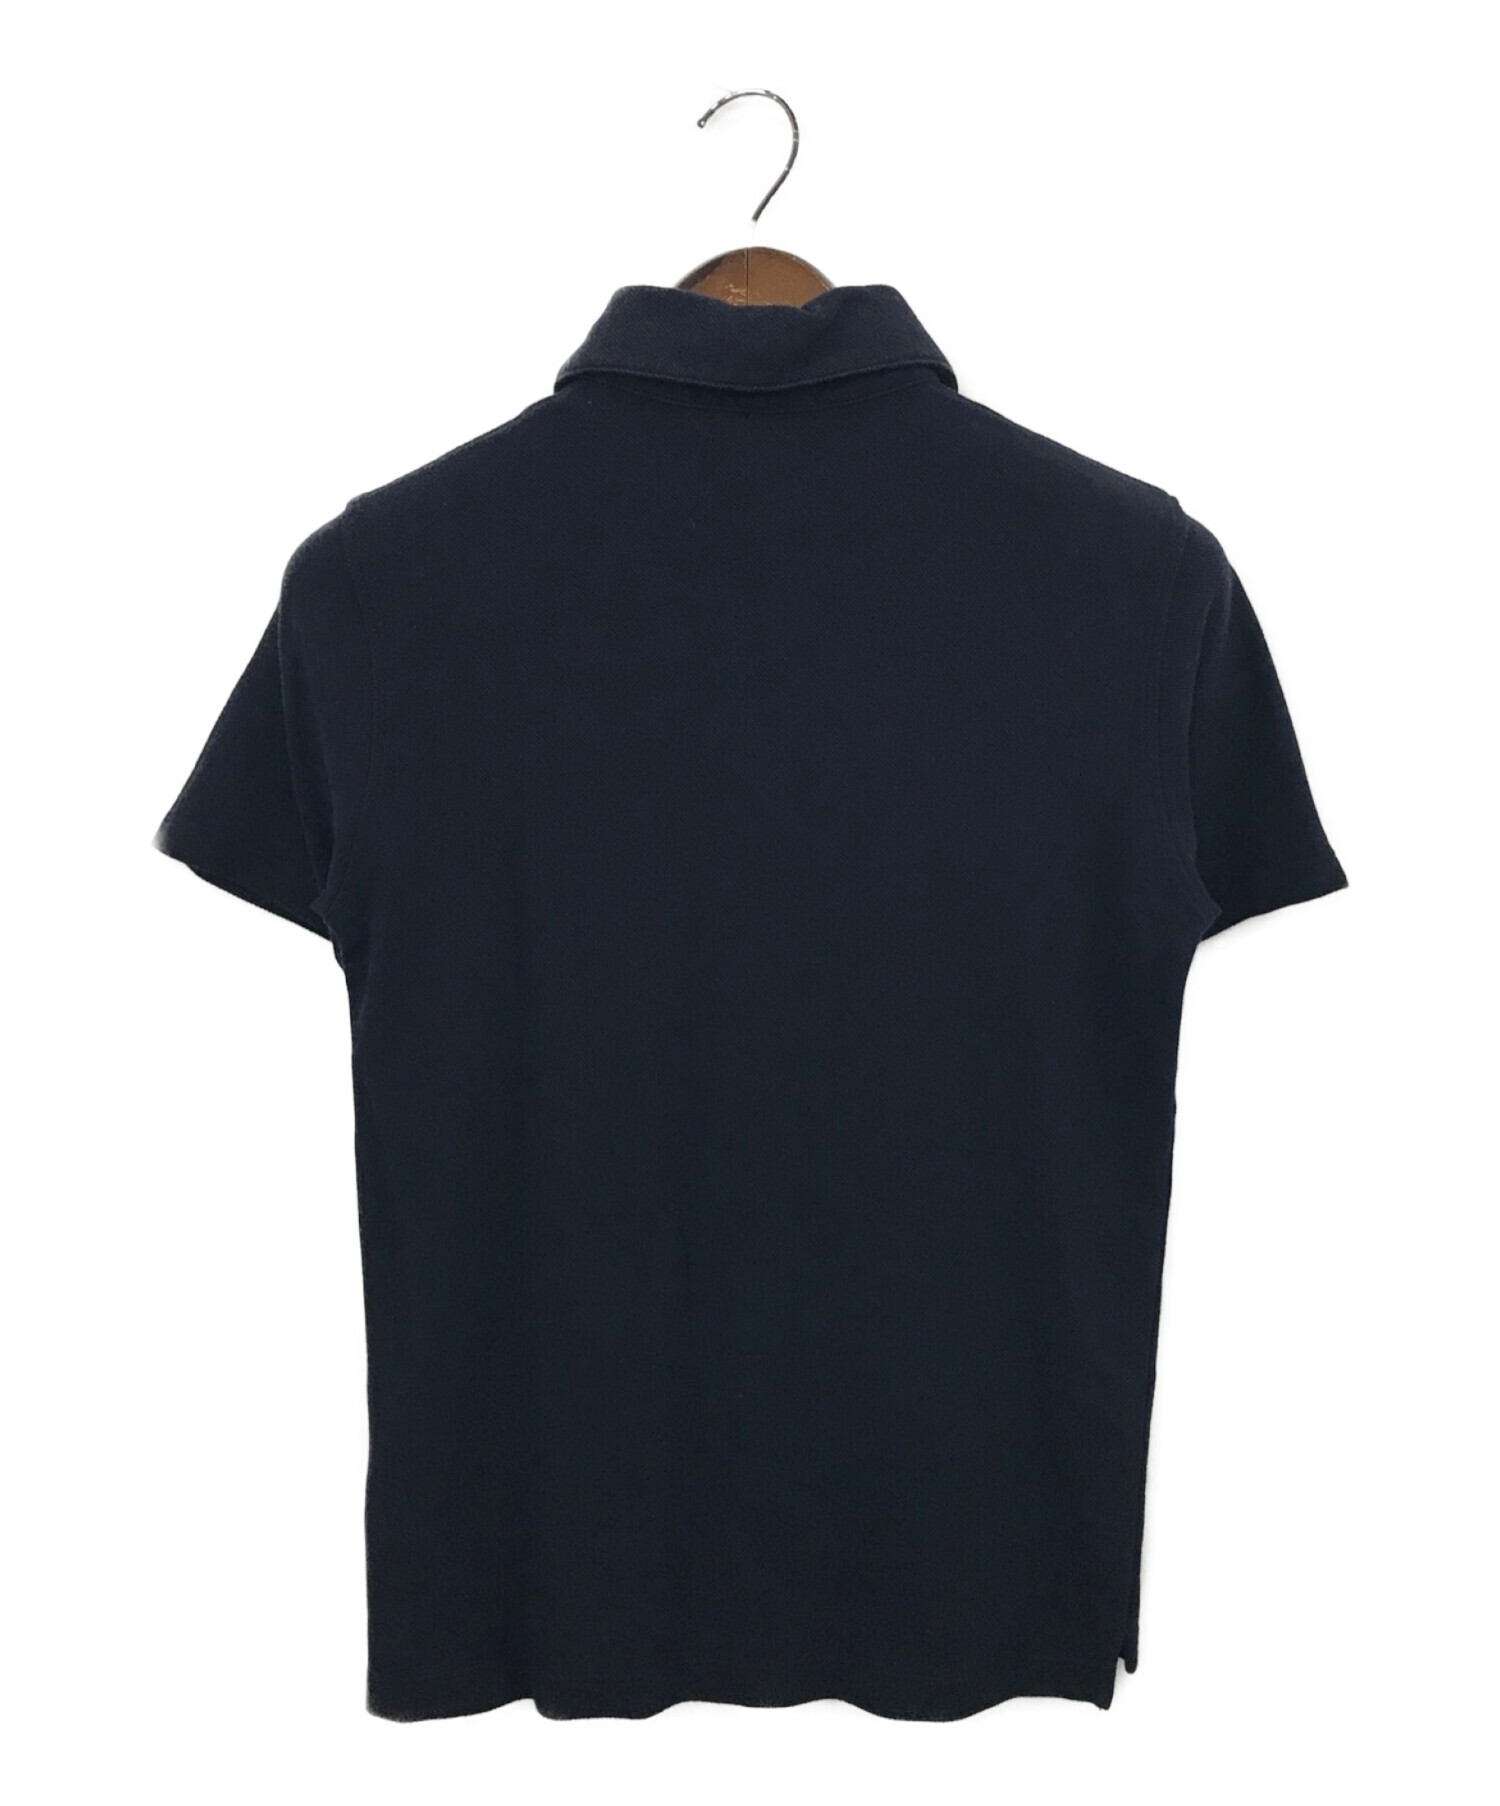 クルチアーニ ポロシャツ サイズ44 - ポロシャツ